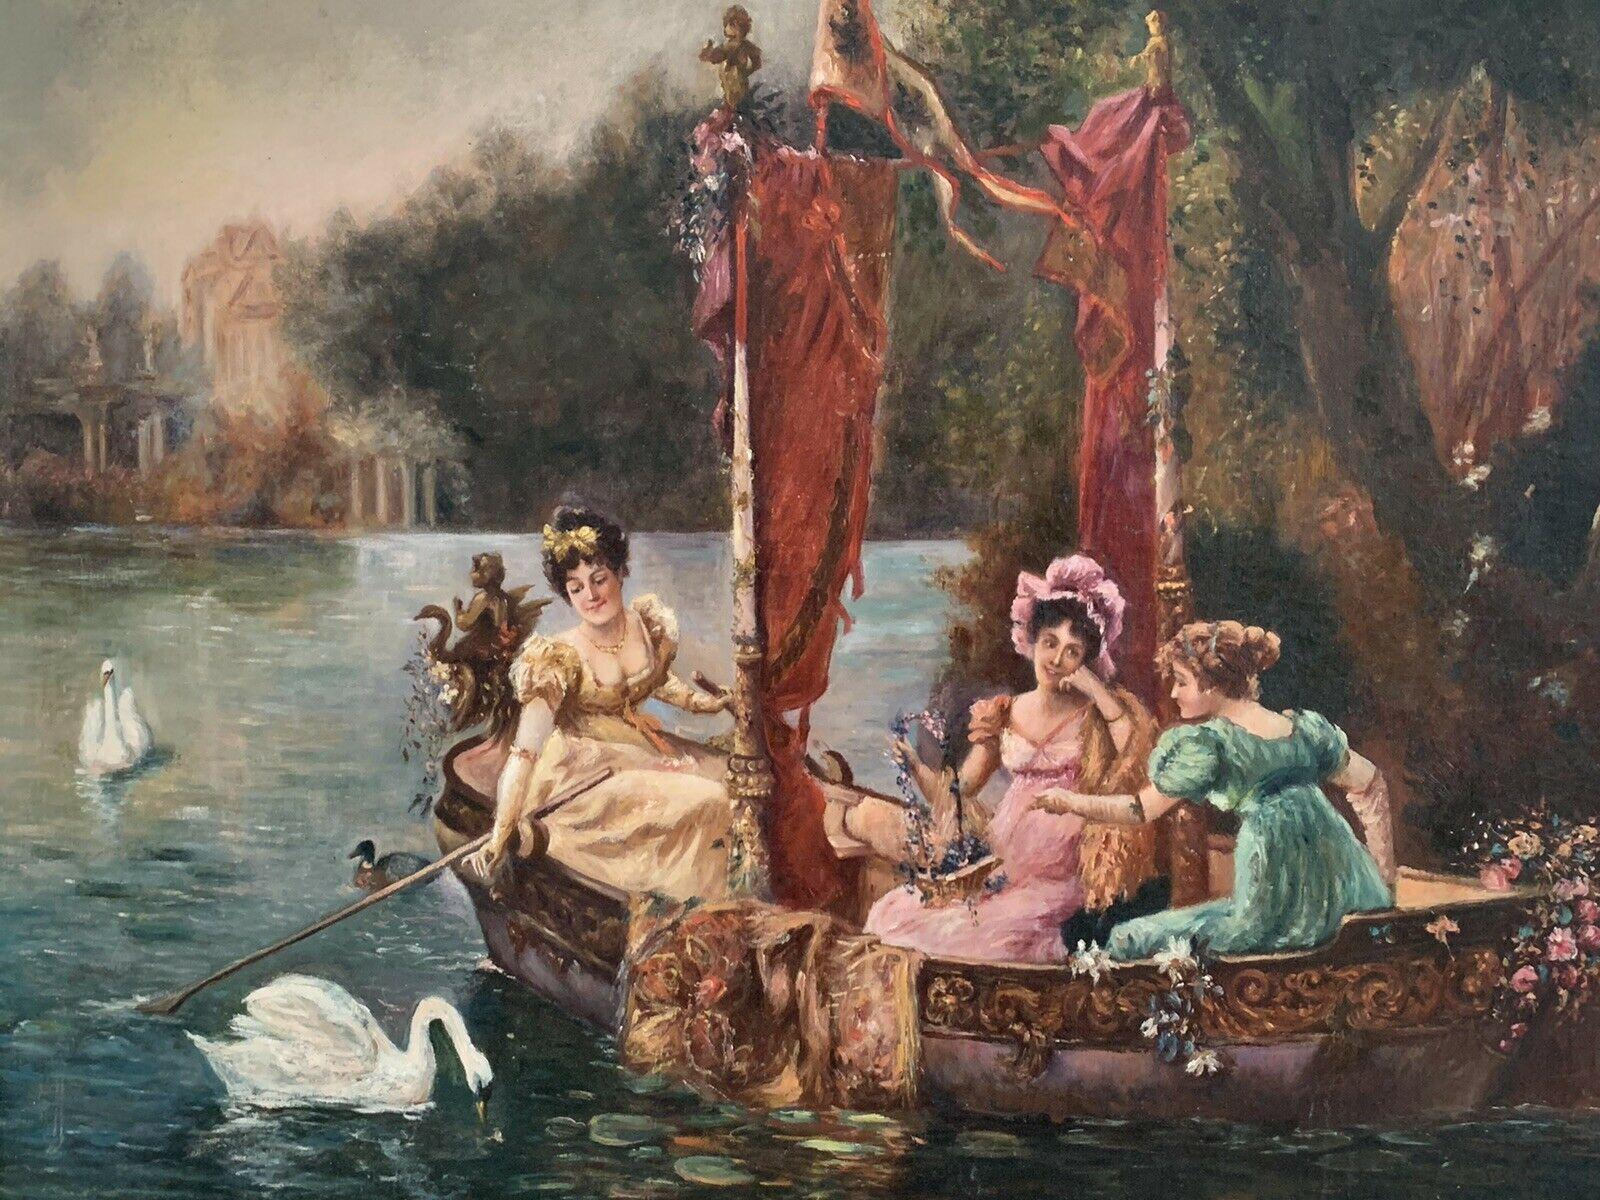 C. 1900 FRANÇAIS BELLE ÉPOQUE GRANDE PEINTURE À L'HUILE - DAMES ÉLÉGANTES NAVIGUANT SUR UN LAC - Rococo Painting par Unknown